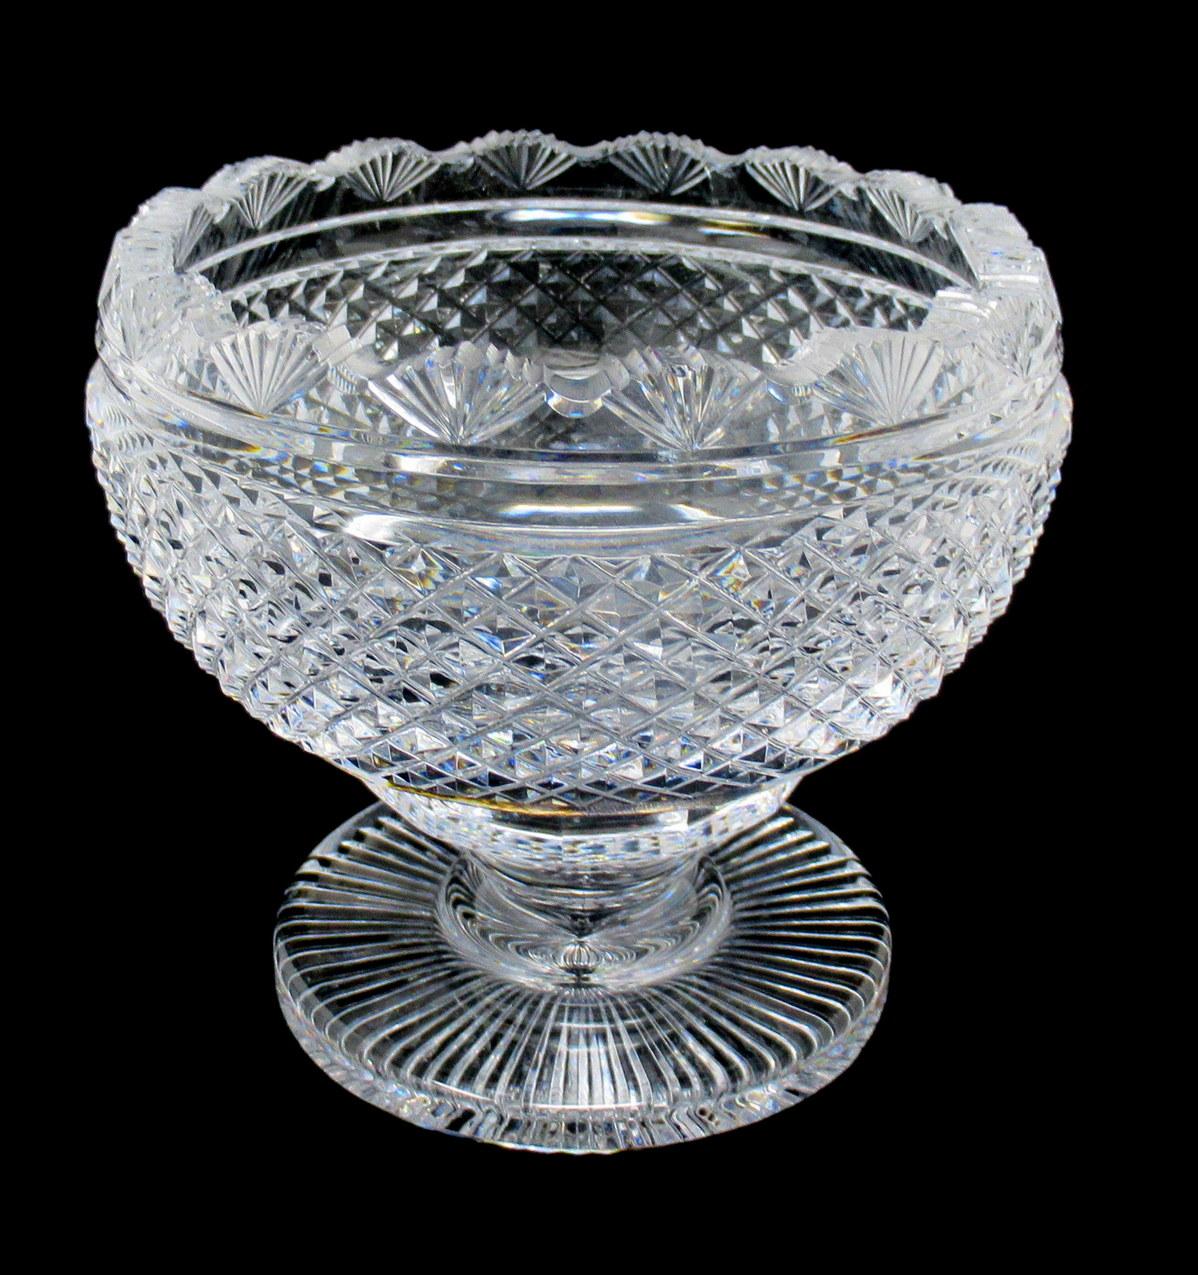 waterford crystal bowl vintage